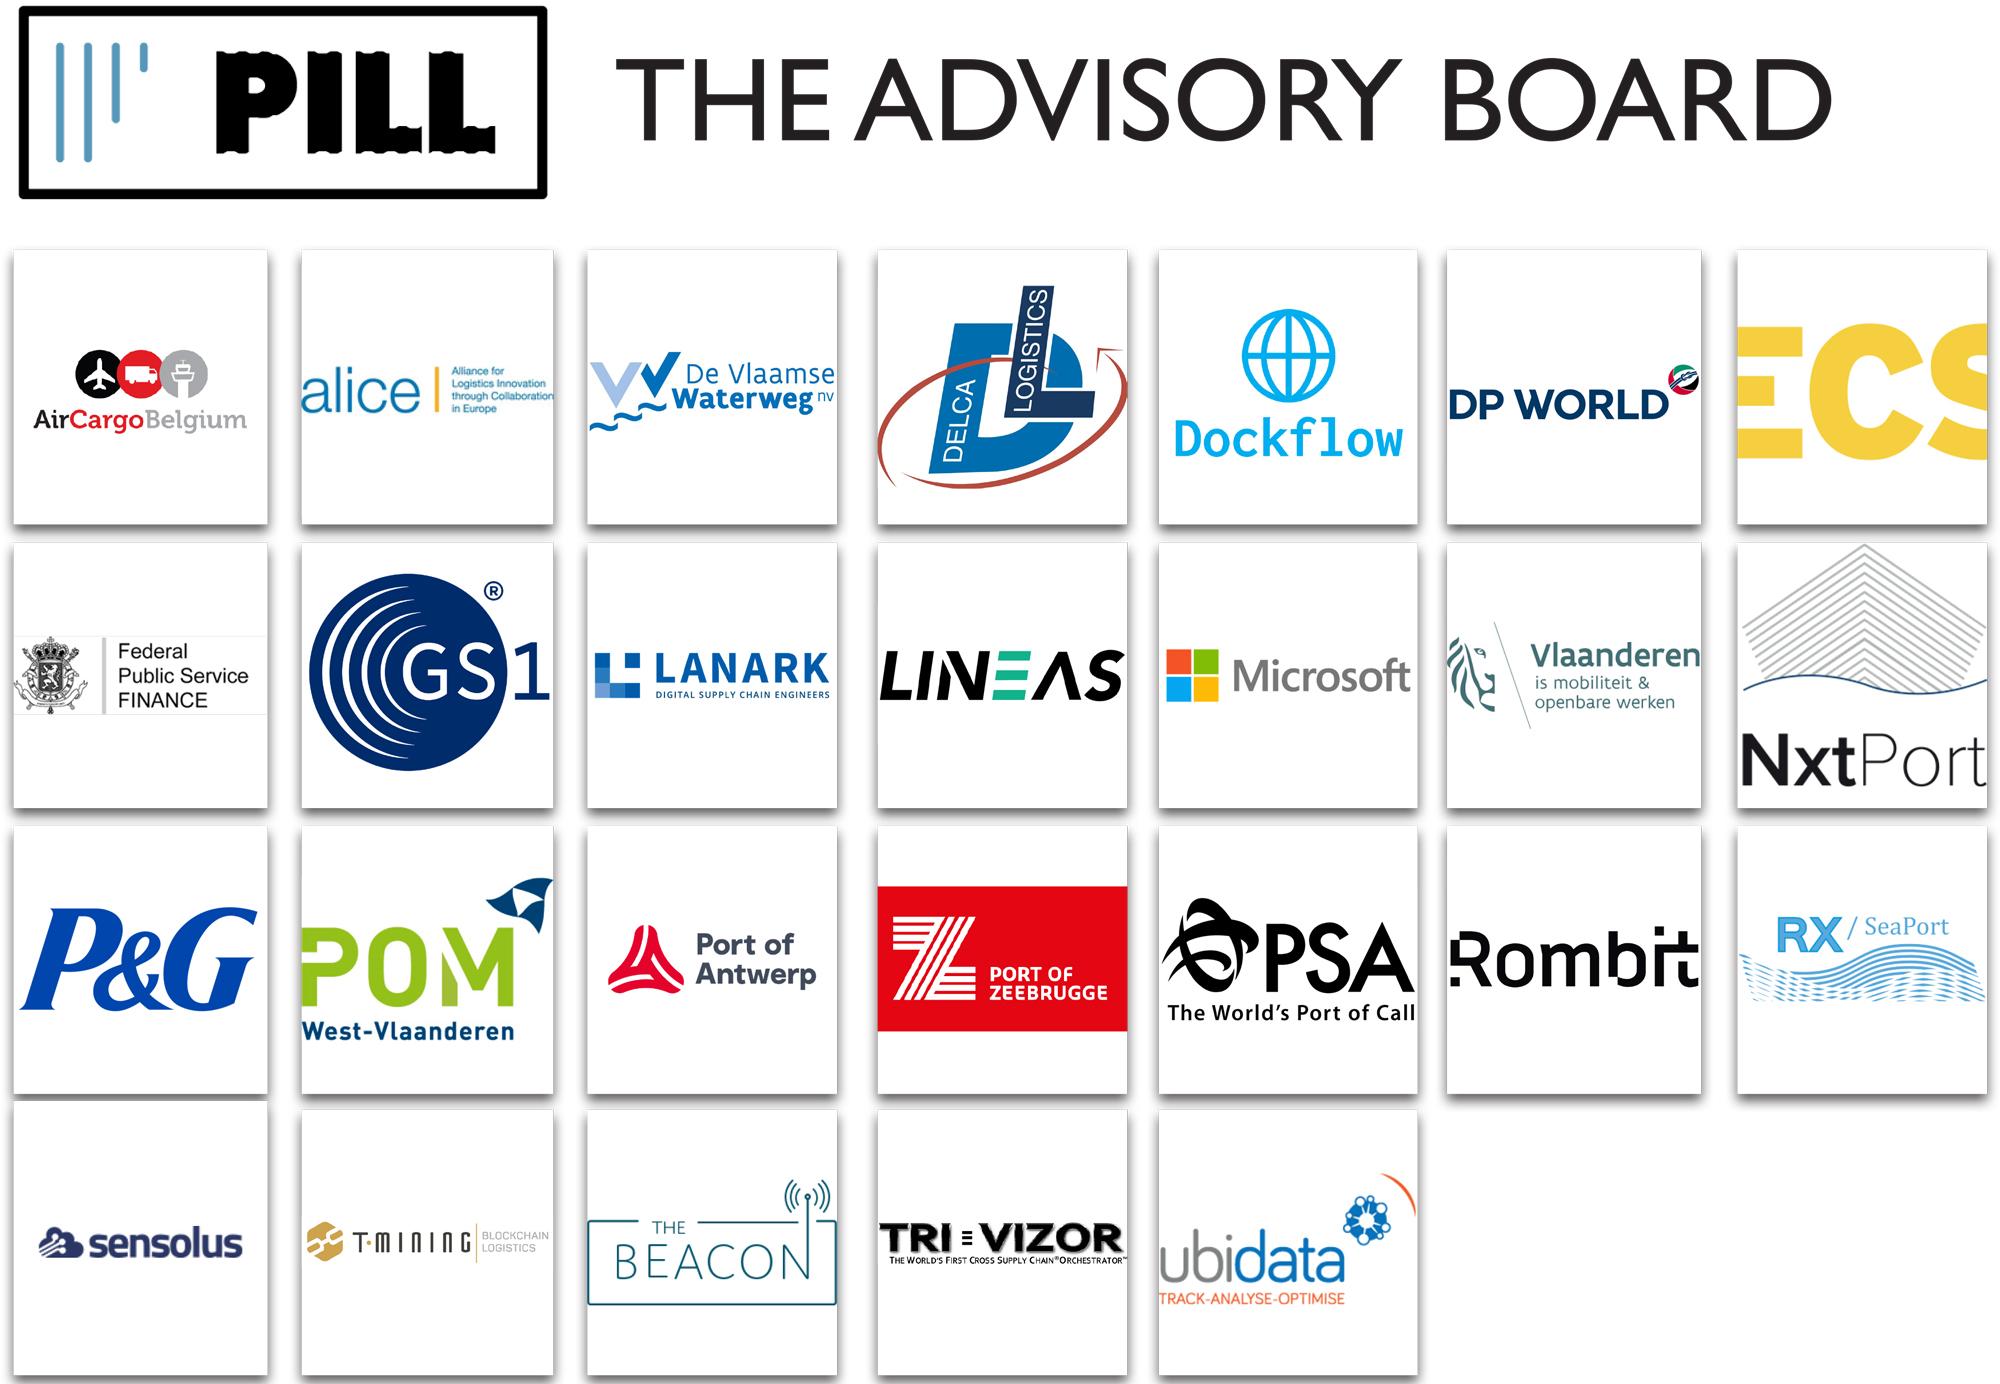 The Advisory Board